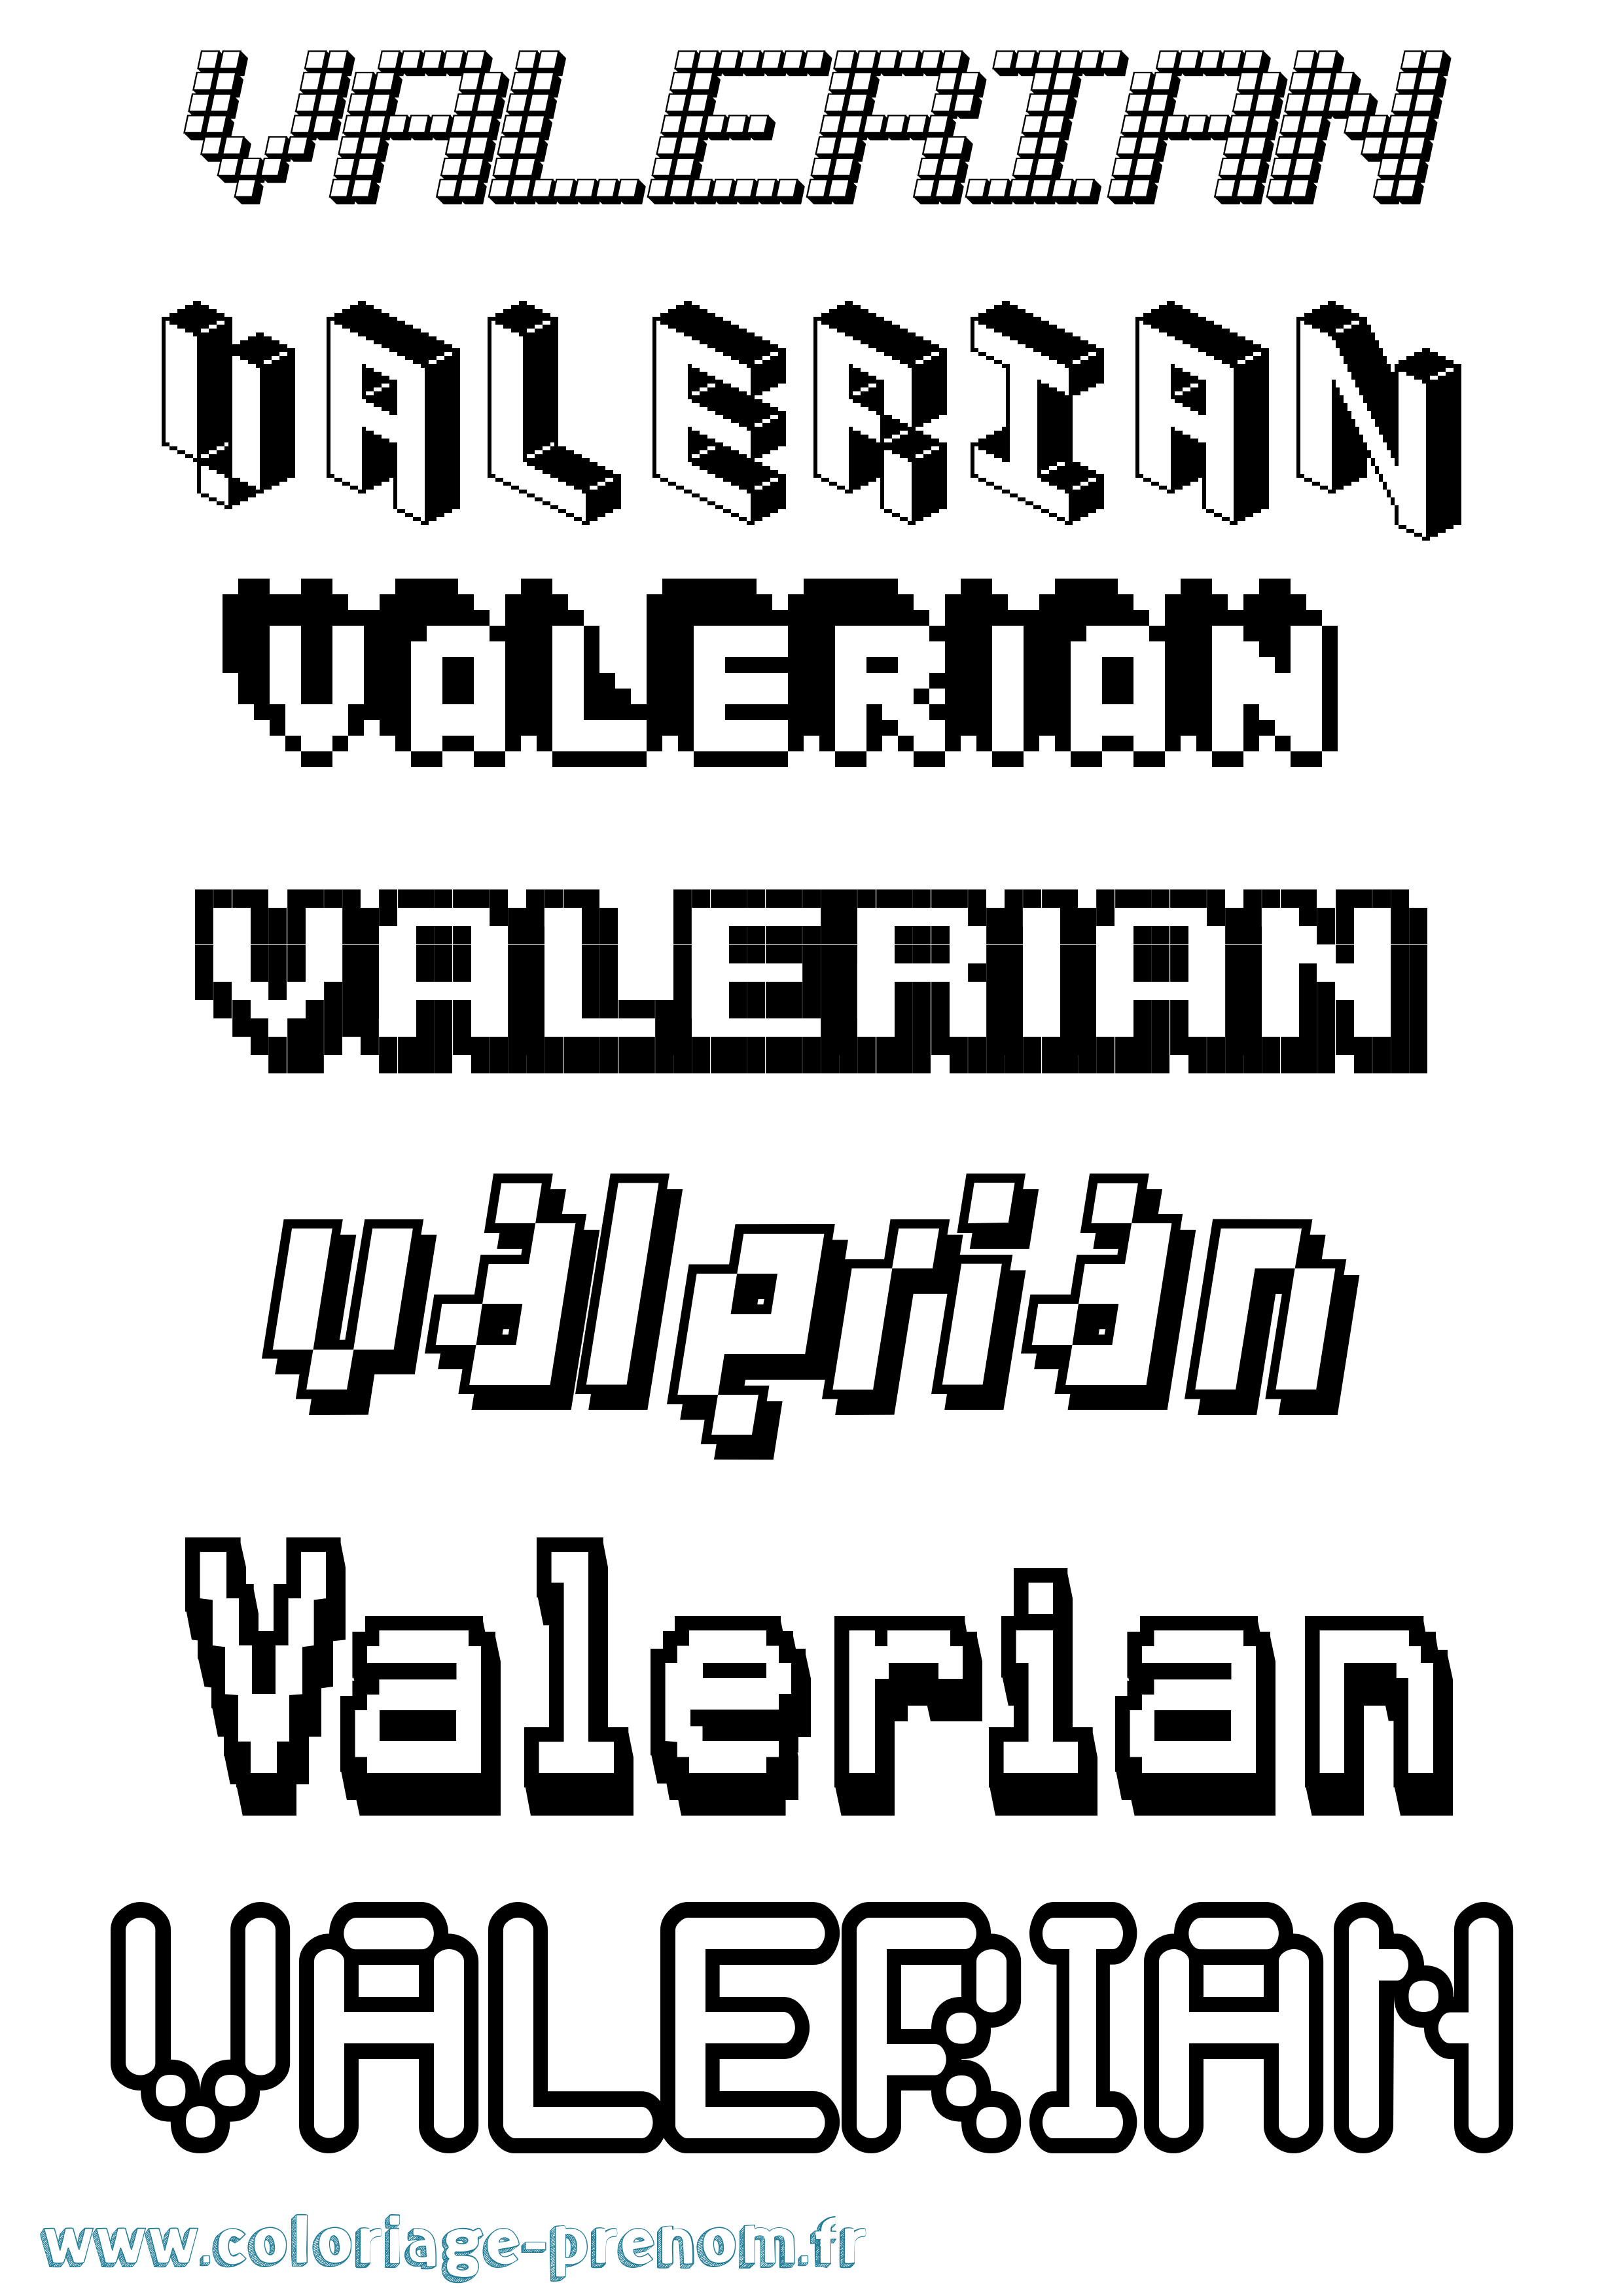 Coloriage prénom Valerian Pixel